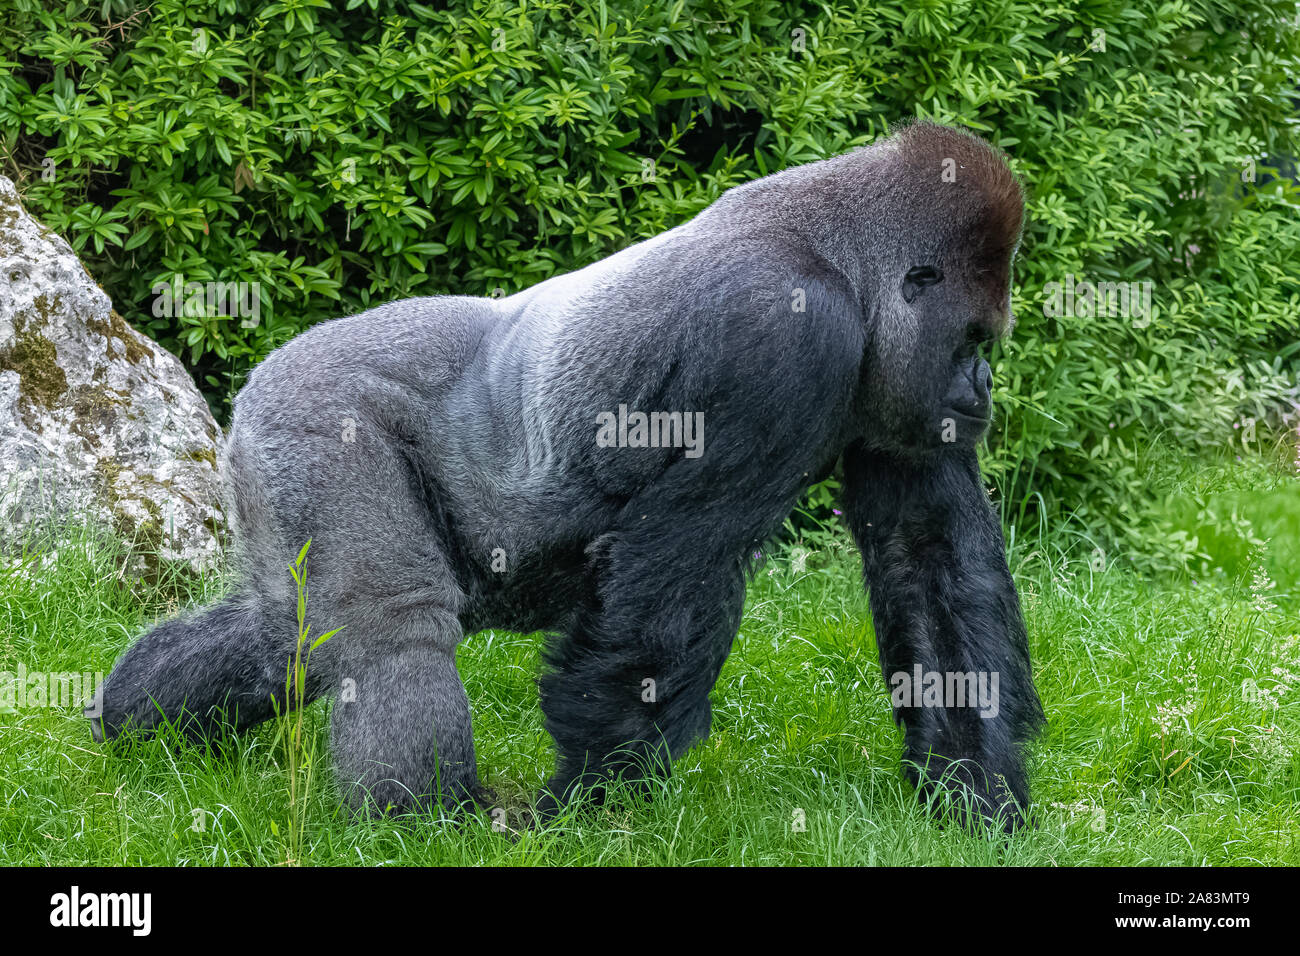 Gorilla, scimmia, maschio dominante seduto in erba, atteggiamento divertente Foto Stock